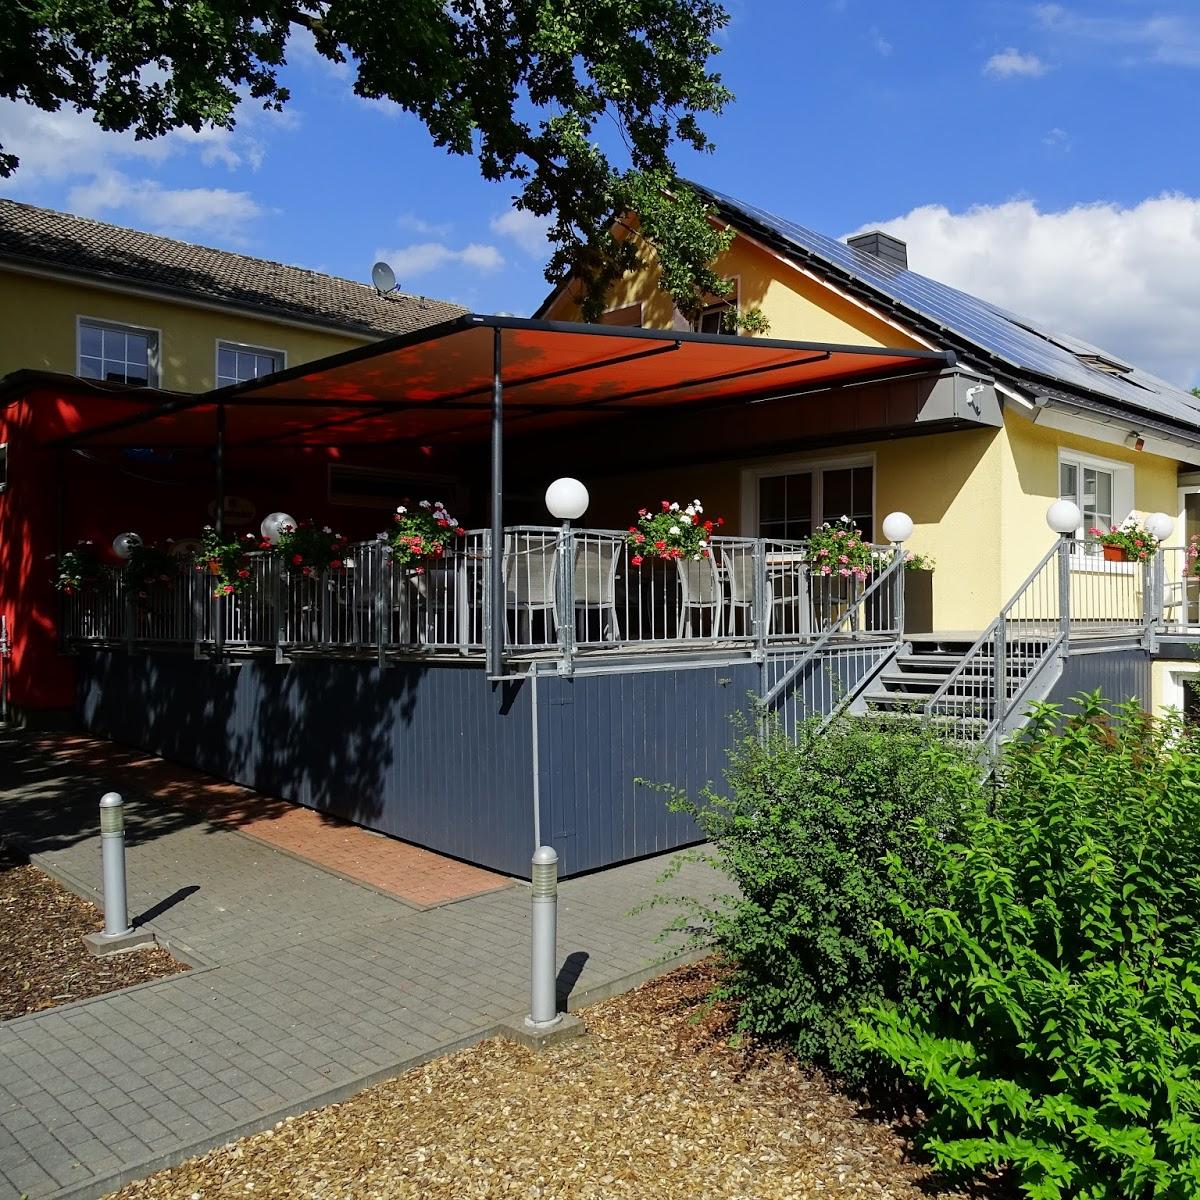 Restaurant "Hotel Restaurant Weserschiffchen" in Porta Westfalica